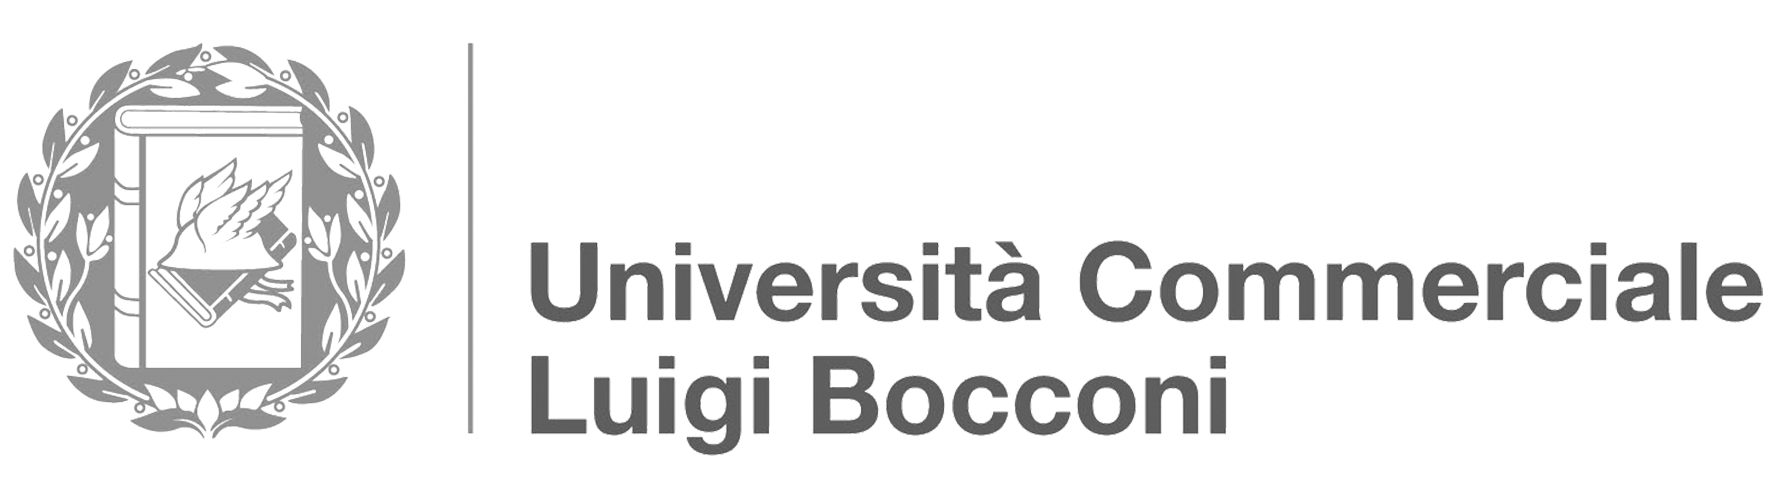 logo-bocconi_1